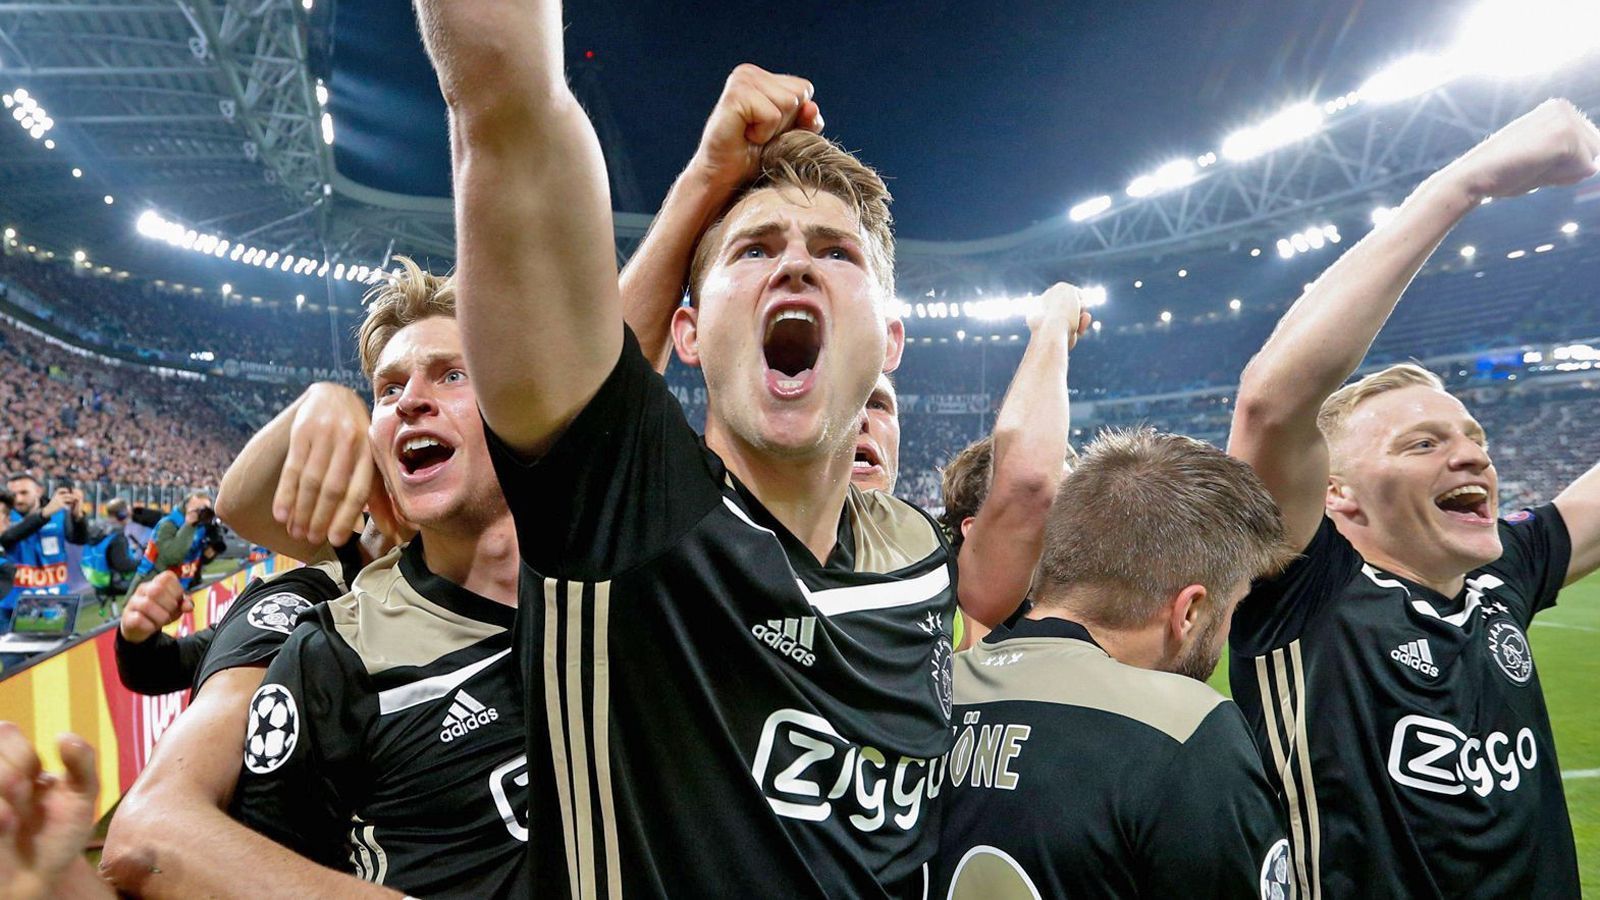 
                <strong>Ajax: Talente statt Stars</strong><br>
                Einen ähnlichen Weg verfolgt auch Ajax Amsterdam, auch die Niederländer geben wenig Geld für Stars aus. Der anhaltende Erfolg des Vereins liegt in dessen Jugend-Konzept begründet. Die Ajax-Talentschmiede "De Toekomst" zählt zu den besten der Welt und hat unter anderem Frenkie de Jong (l.), Matthijs de Ligt (M.) und Donny van de Beek (r.) hervorgebracht. Im Viertelfinal-Rückspiel gegen Juventus Turin standen sechs Spieler aus der eigenen Jugend in der Startelf. Insgesamt befinden sich derzeit 13 Akteure aus dem eigenen Nachwuchs im Profi-Kader. Der Einzug ins Halbfinale der Champions League zeigt, dass sich gute Nachwuchsarbeit bezahlt macht.
              